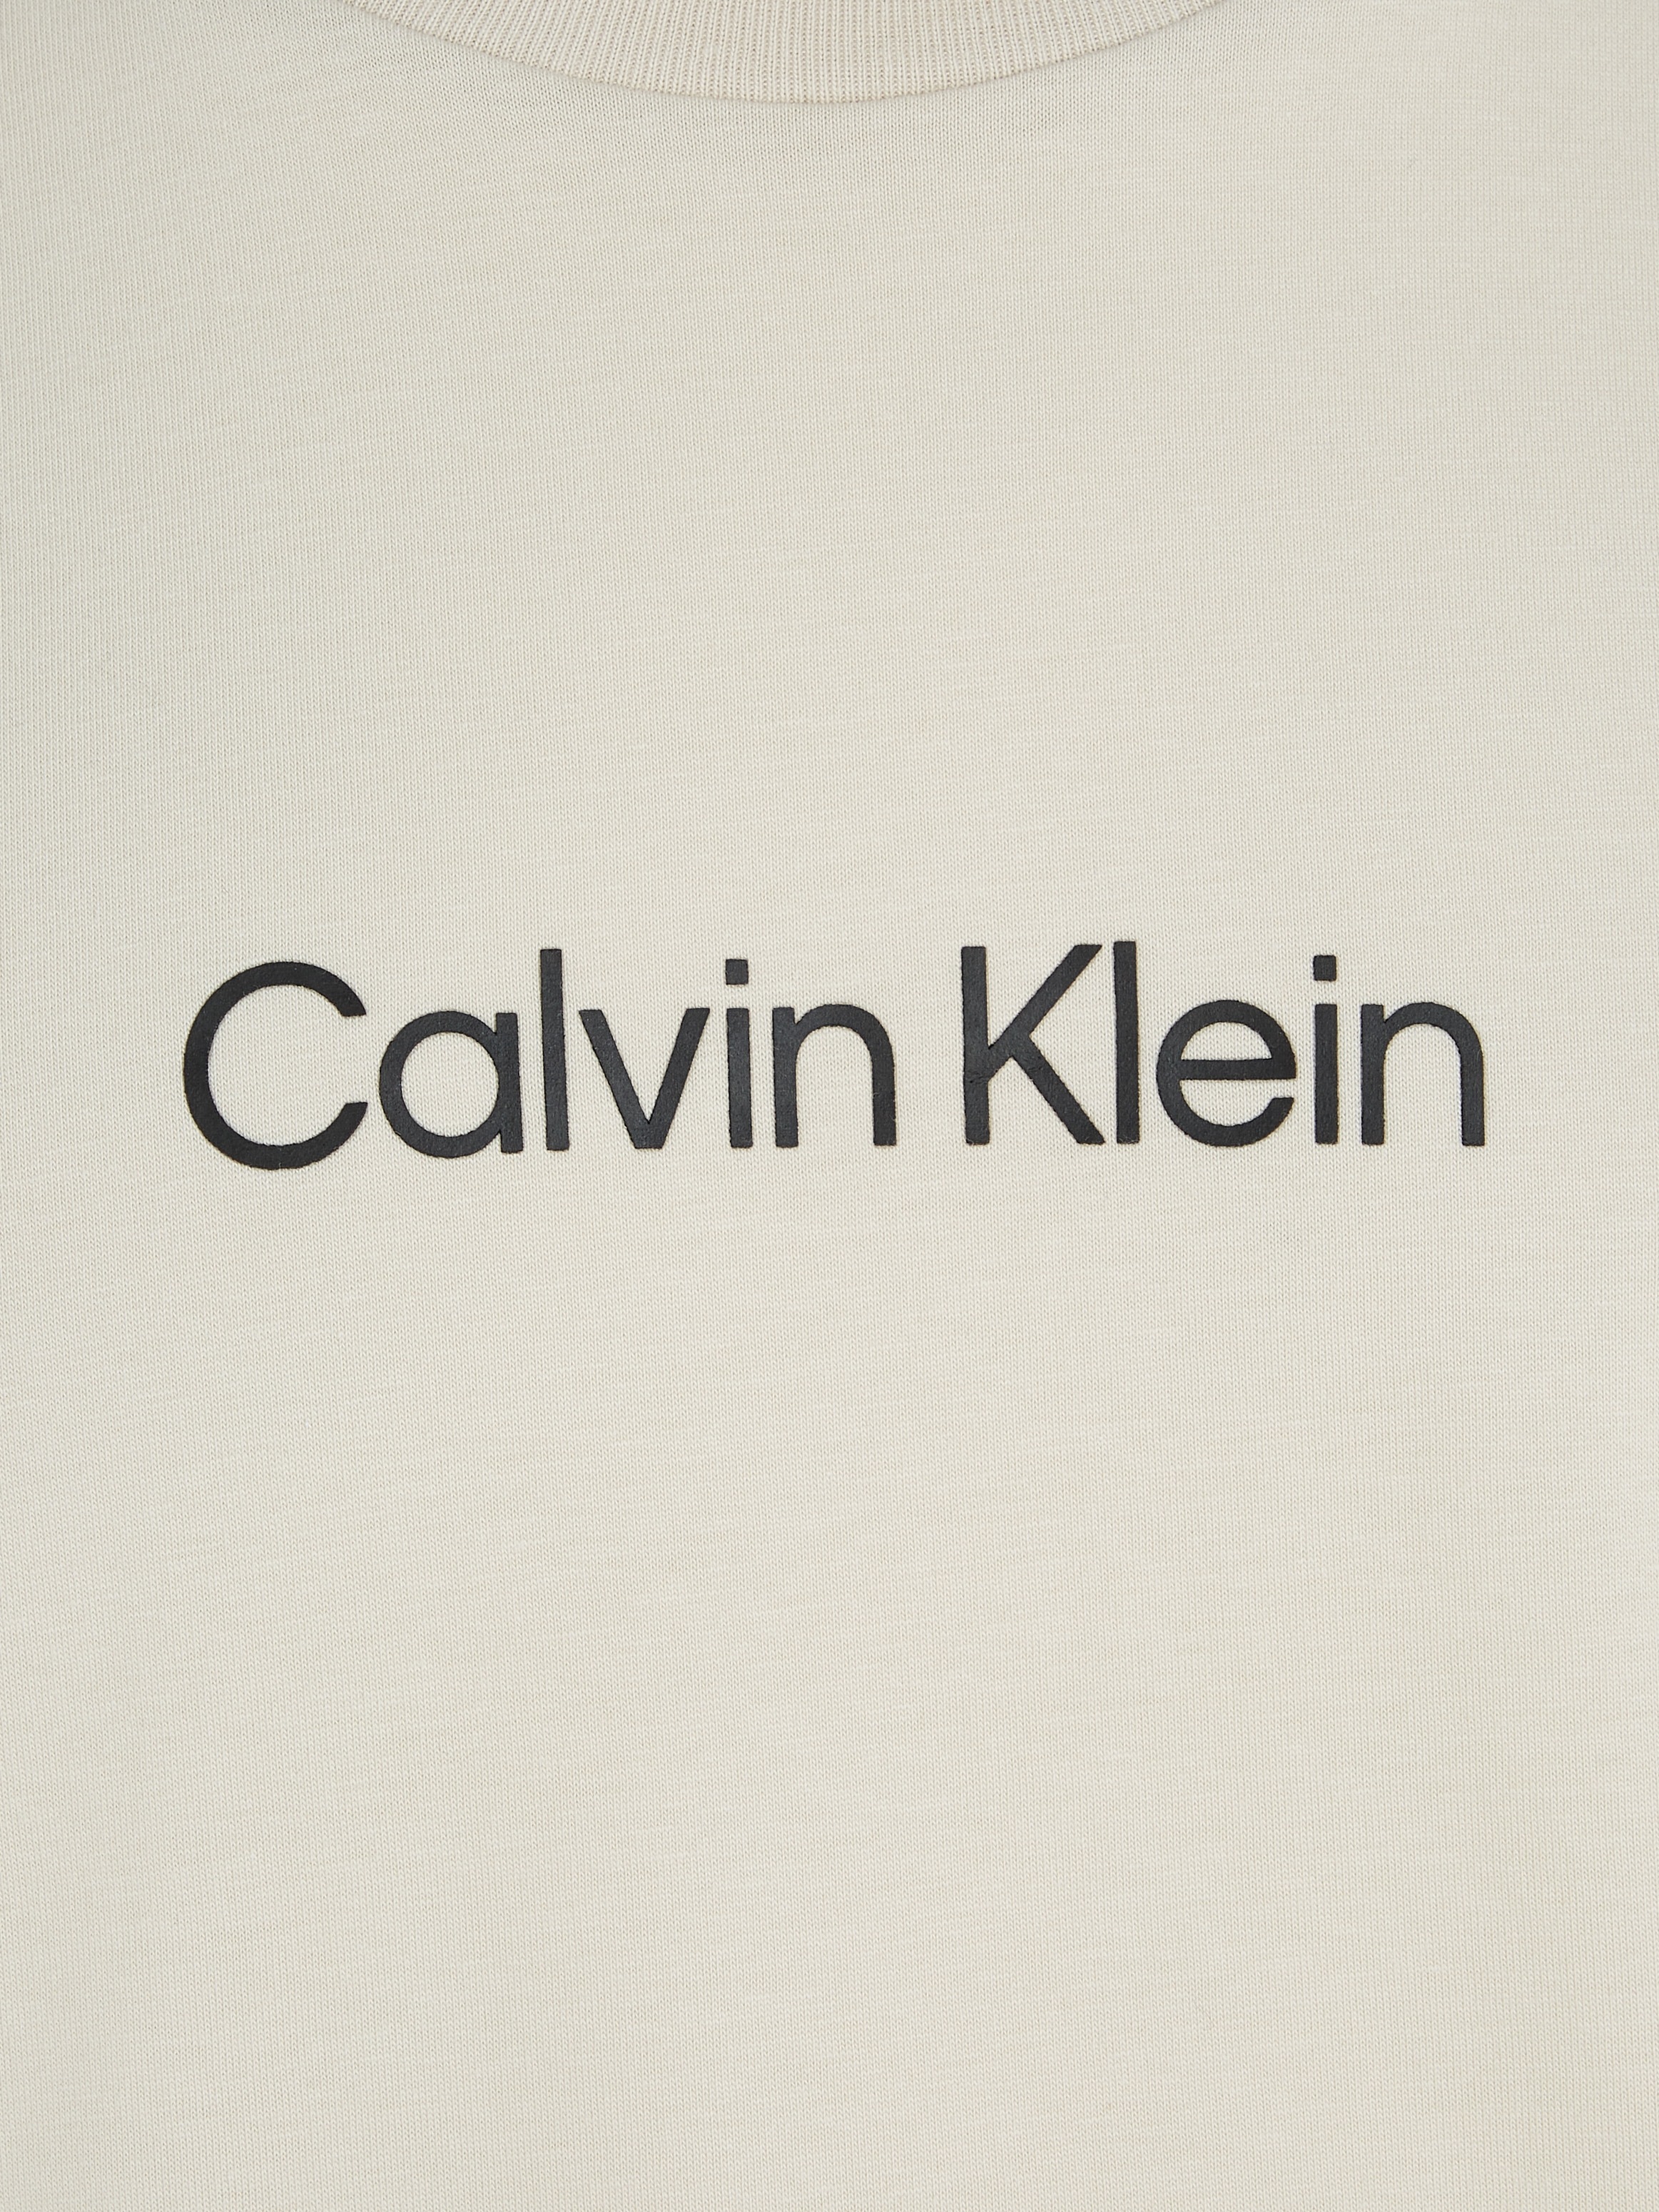 T-SHIRT«, Markenlabel »HERO aufgedrucktem bei T-Shirt LOGO Calvin Klein ♕ COMFORT mit